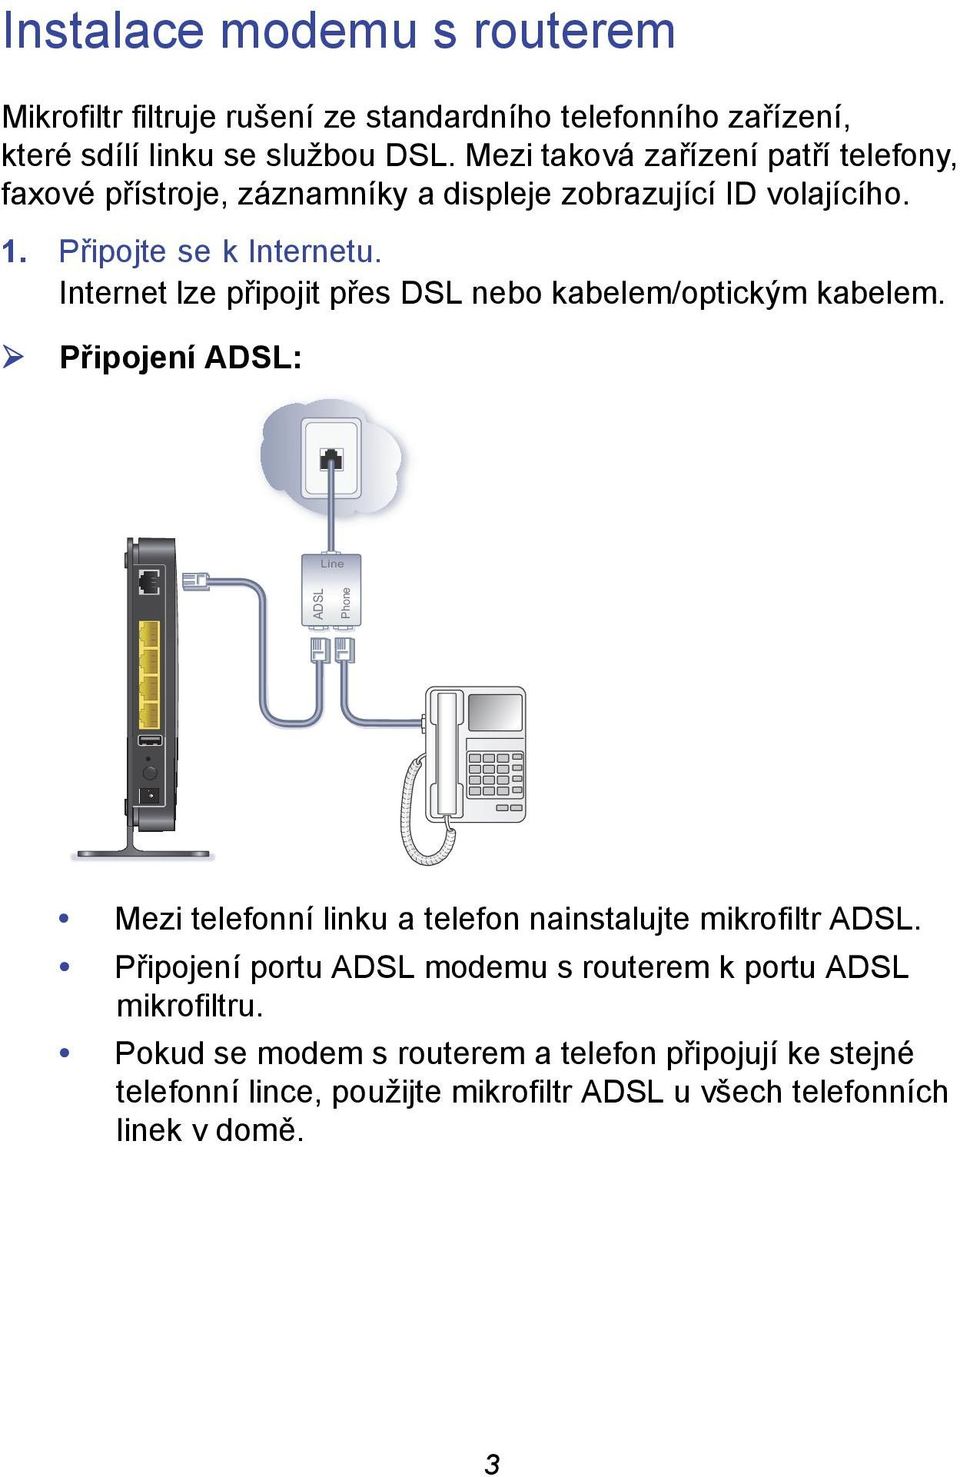 Internet lze připojit přes DSL nebo kabelem/optickým kabelem.